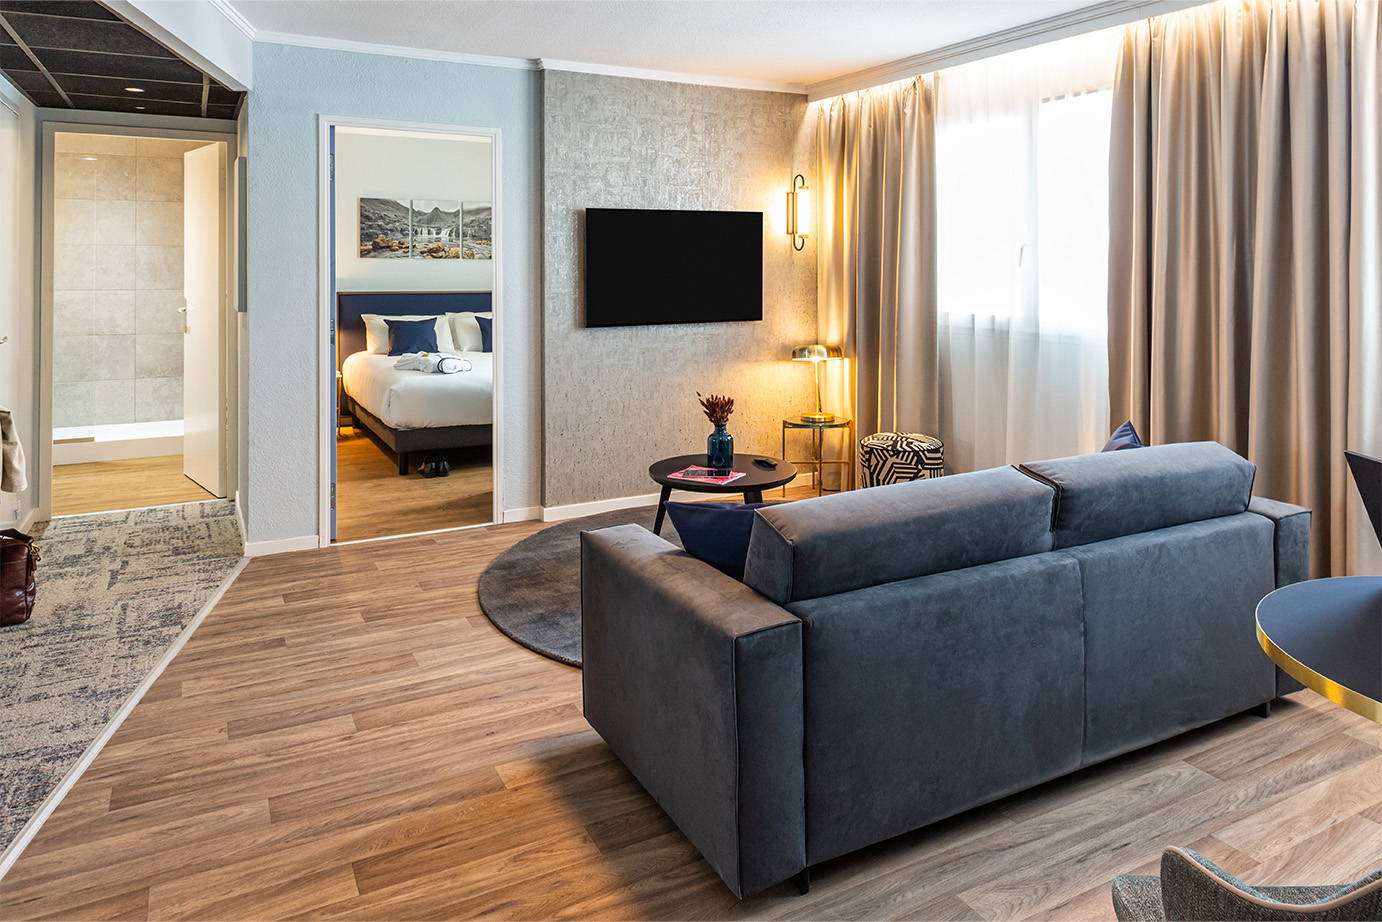 Photographie d'un appartement lumineux avec sol en bois, mur clairs et mobiliers bien assortis